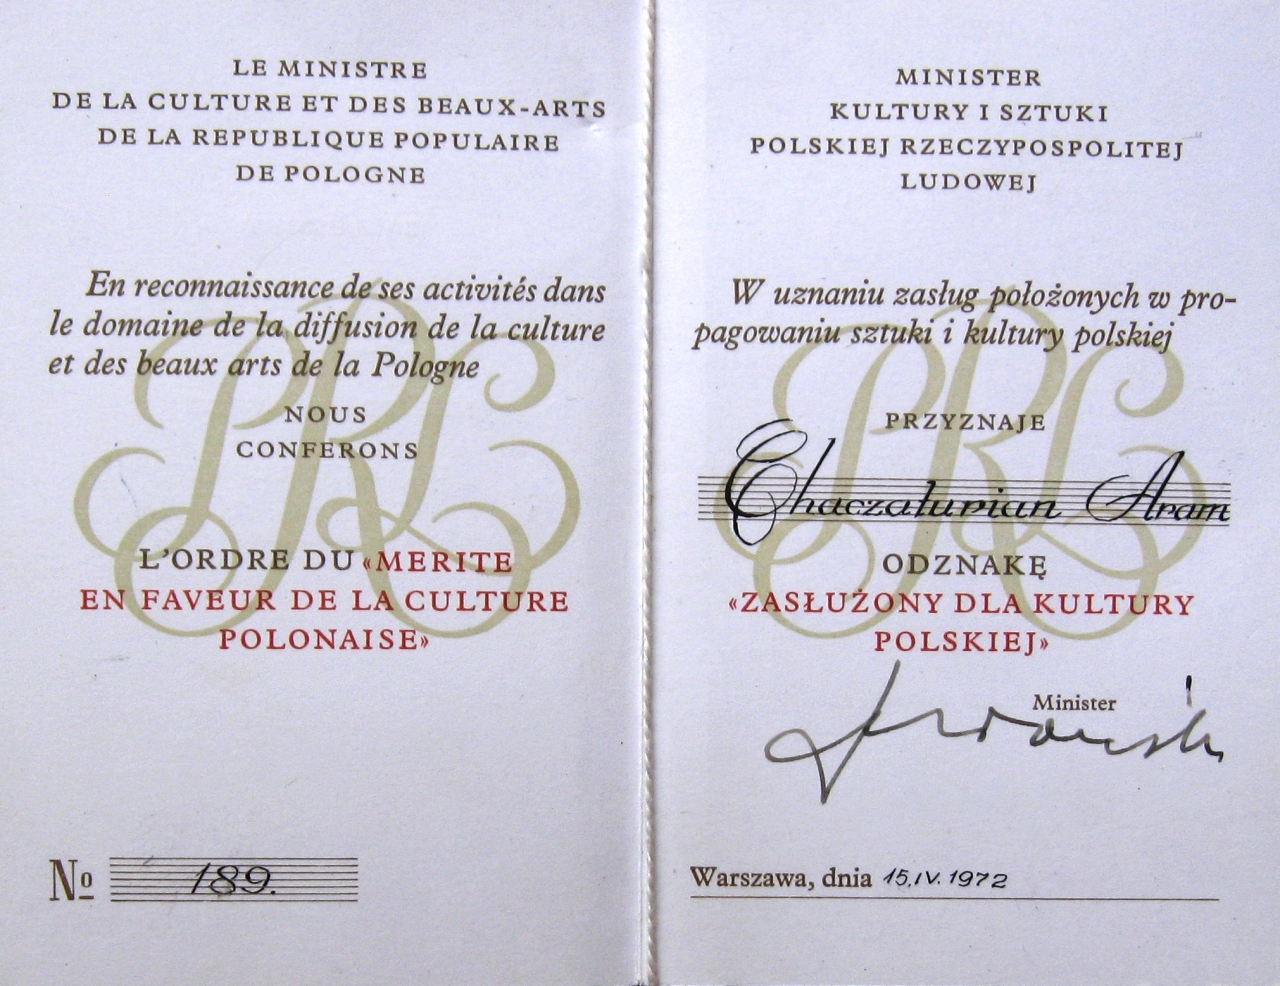 Դիպլոմ՝ № 189 «Լեհաստանի ժողովրդական հանրապետության արվեստի վաստակավոր գործչի» շքանշանի՝ շնորհված Ա.Խաչատրյանին Լեհաստանի մշակույթի բնագավառում ունեցած վաստակի համար. 15 ապրիլի, 1971թ.: